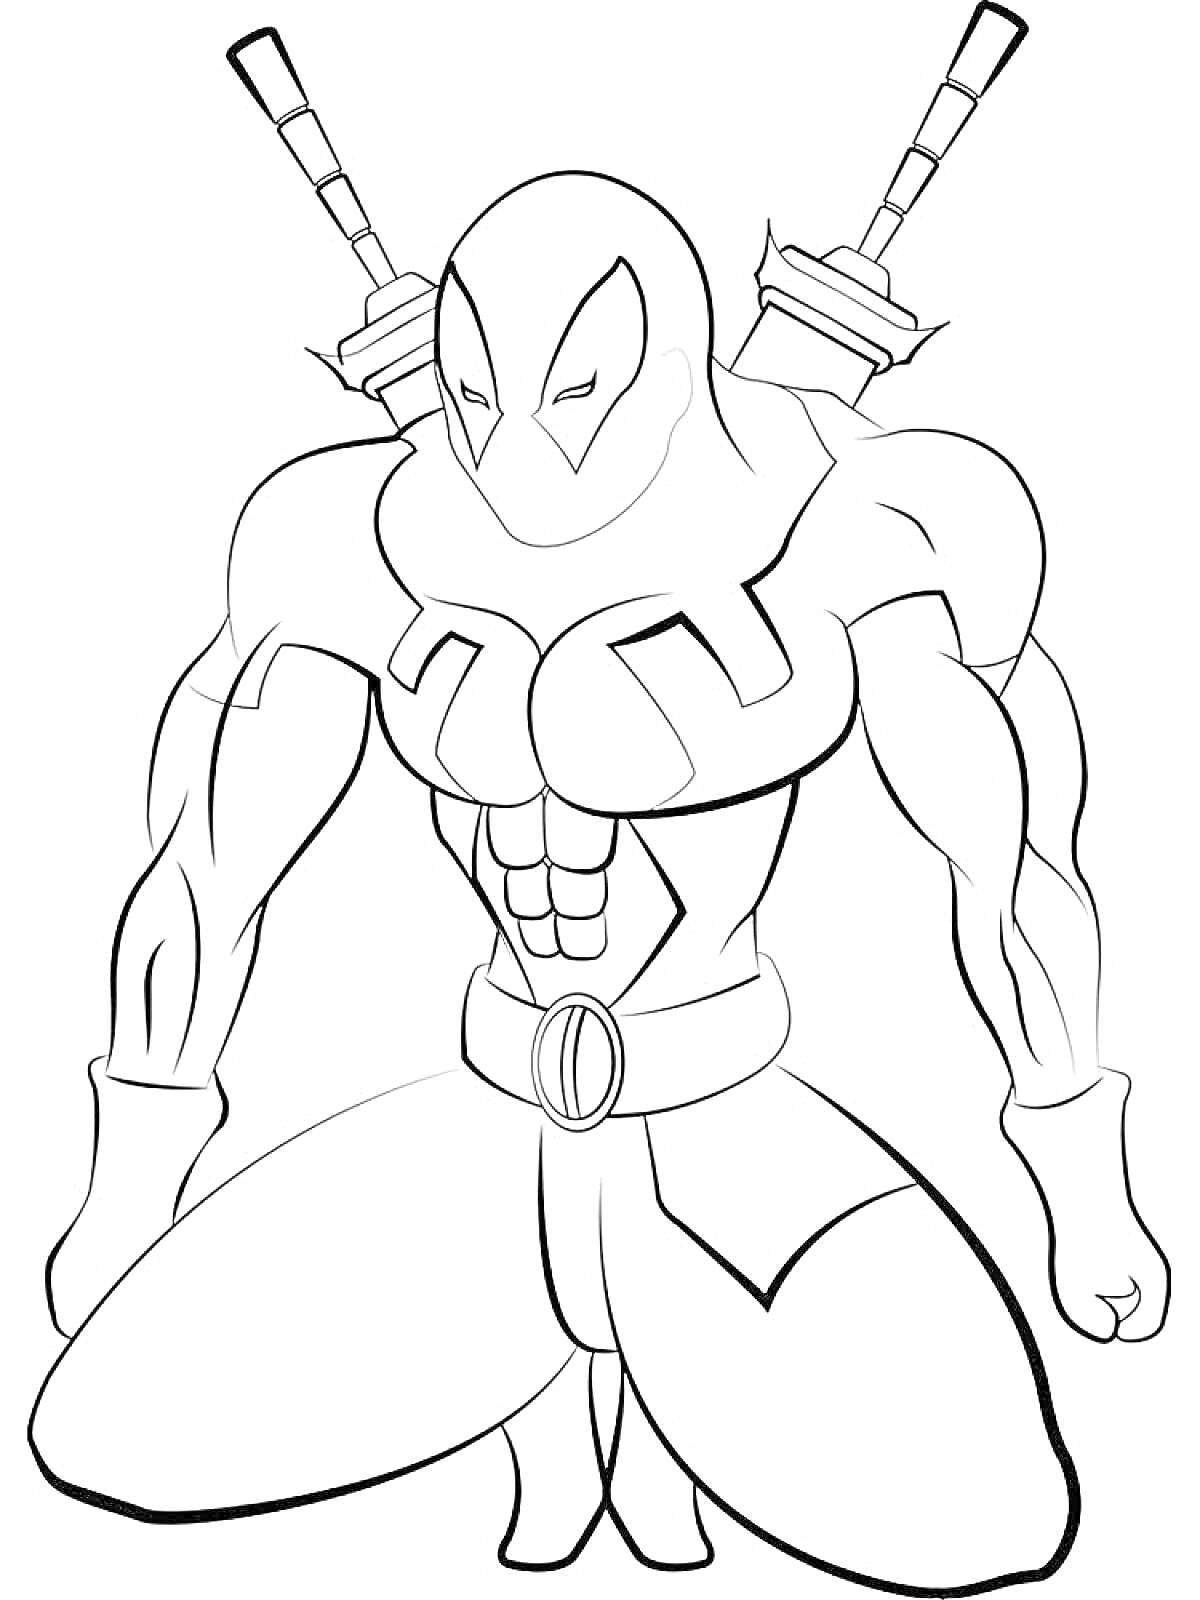 Супергерой из Марвел с двумя мечами за спиной в маске и костюме, опустившийся на одно колено